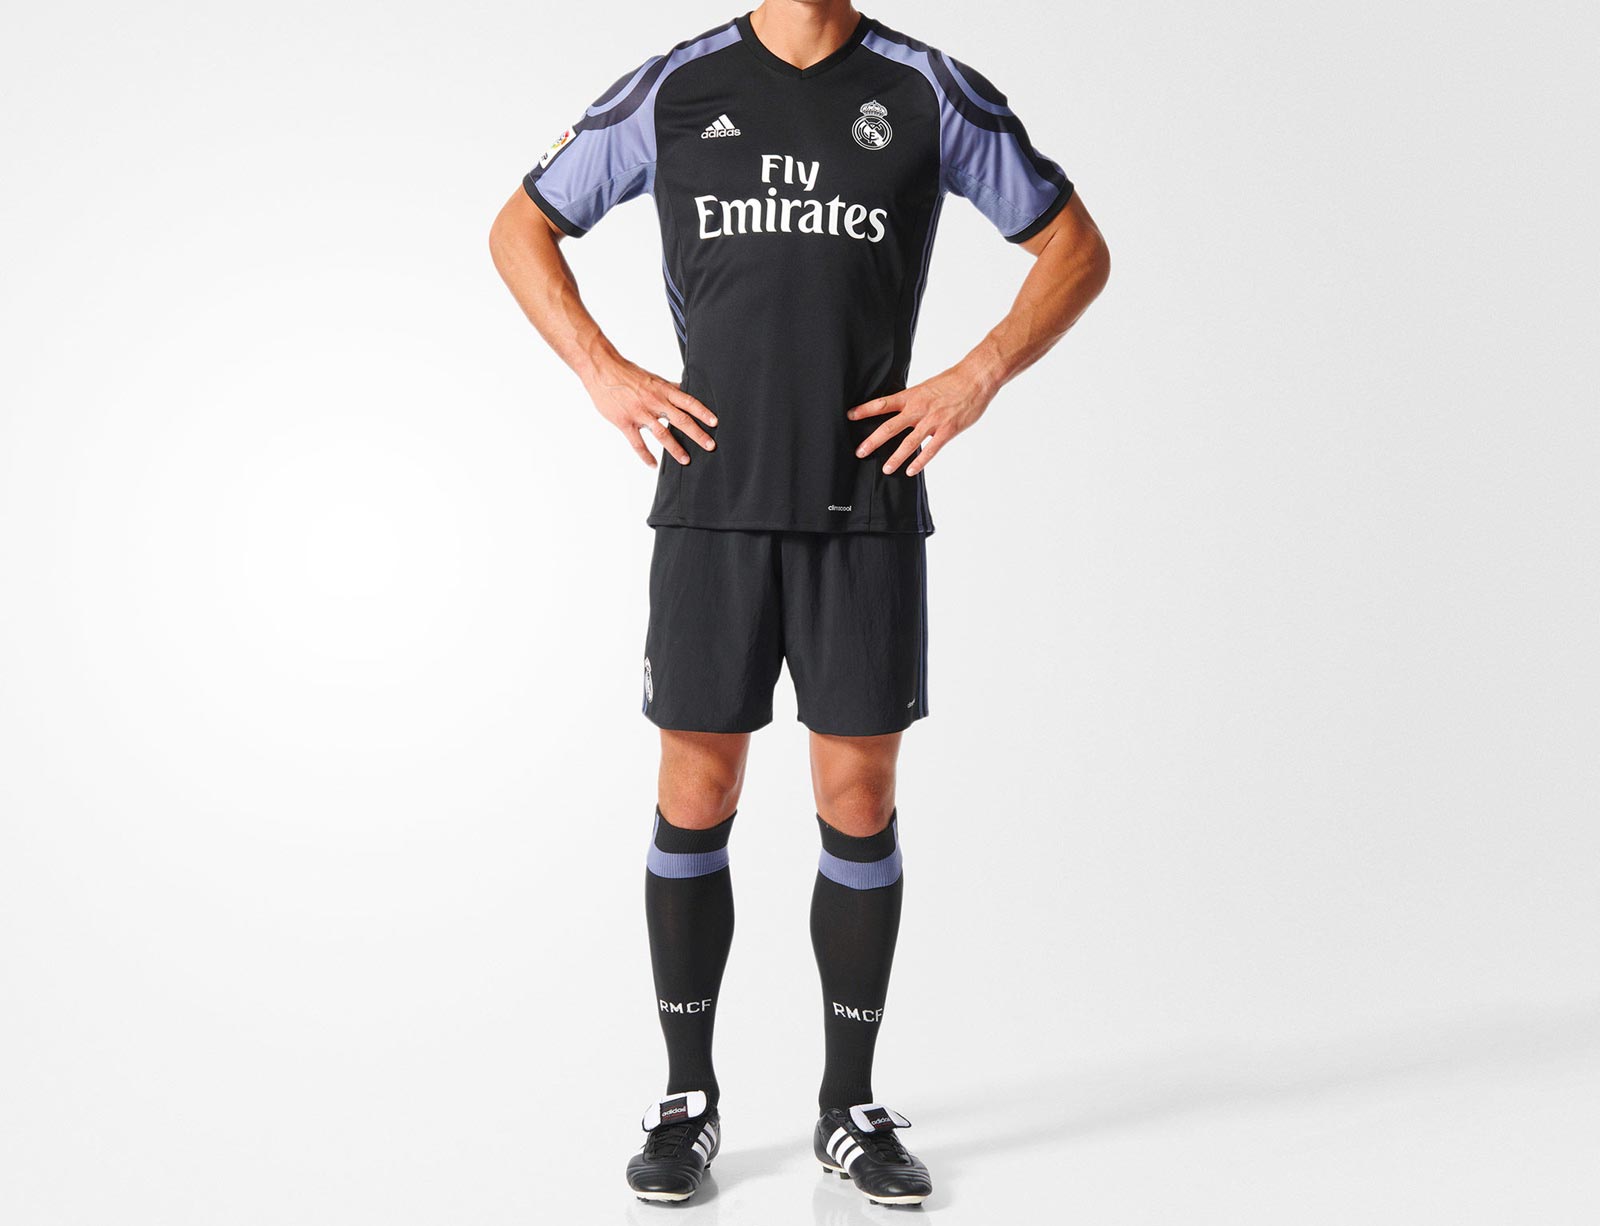 Real Madrid 16 17 Third Kit Released Footy Headlines